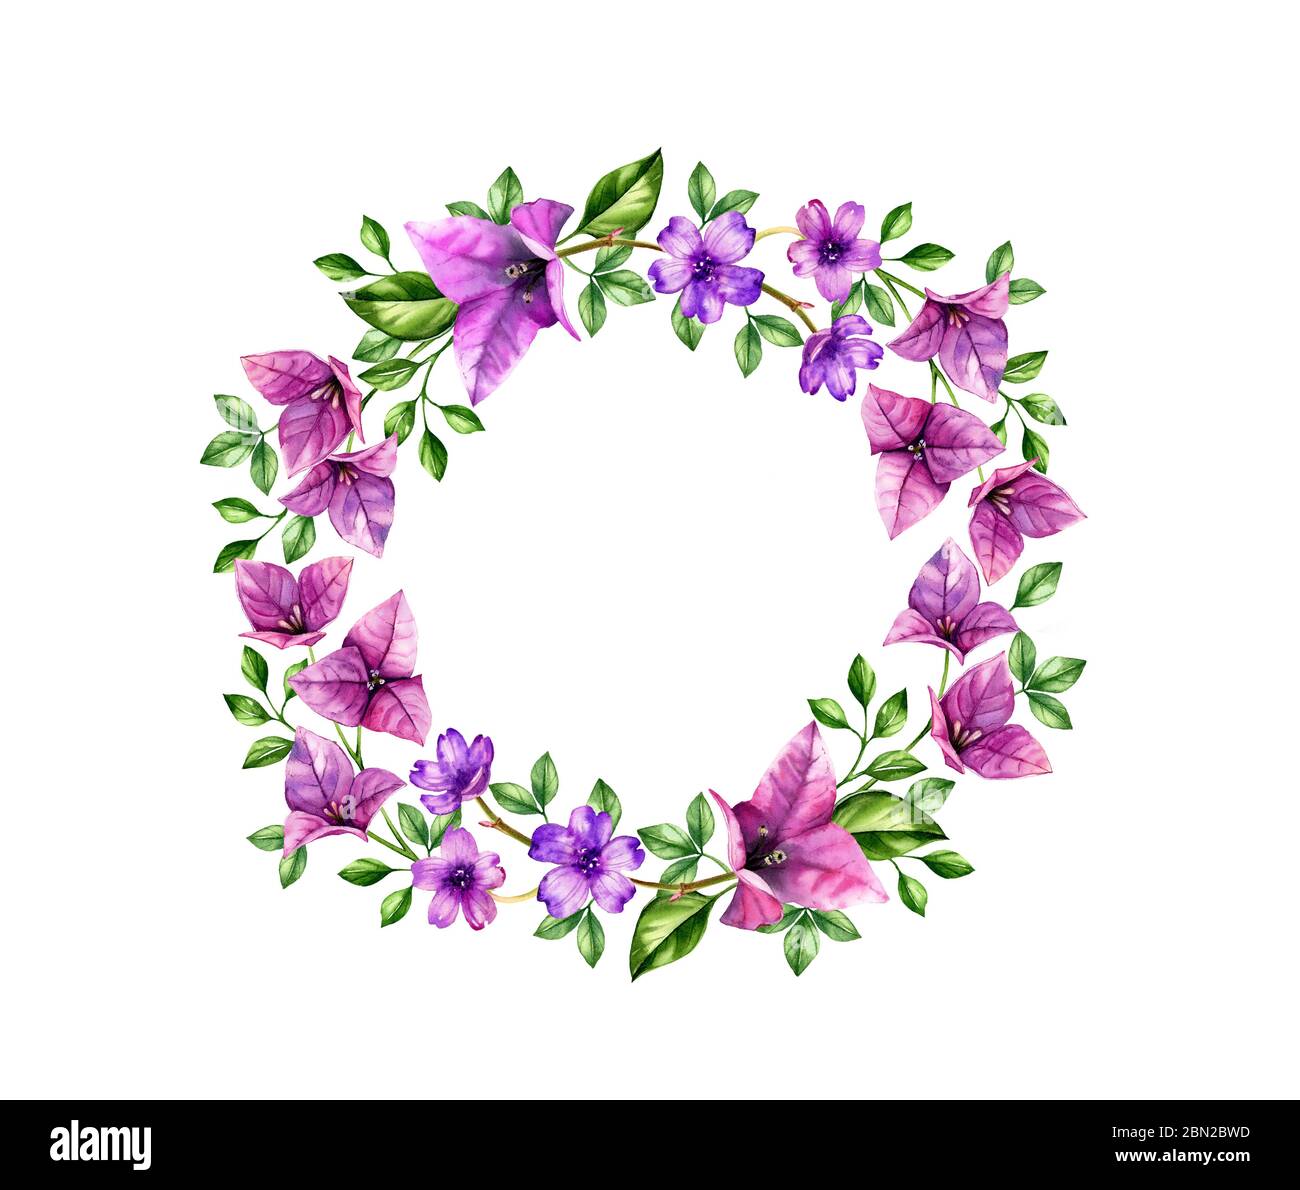 Wreath acquerello con fiori di bouganvillea viola. Sfondo tropicale dipinto a mano per testo, logo, biglietti da matrimonio. Illustrazioni botaniche isolate Foto Stock